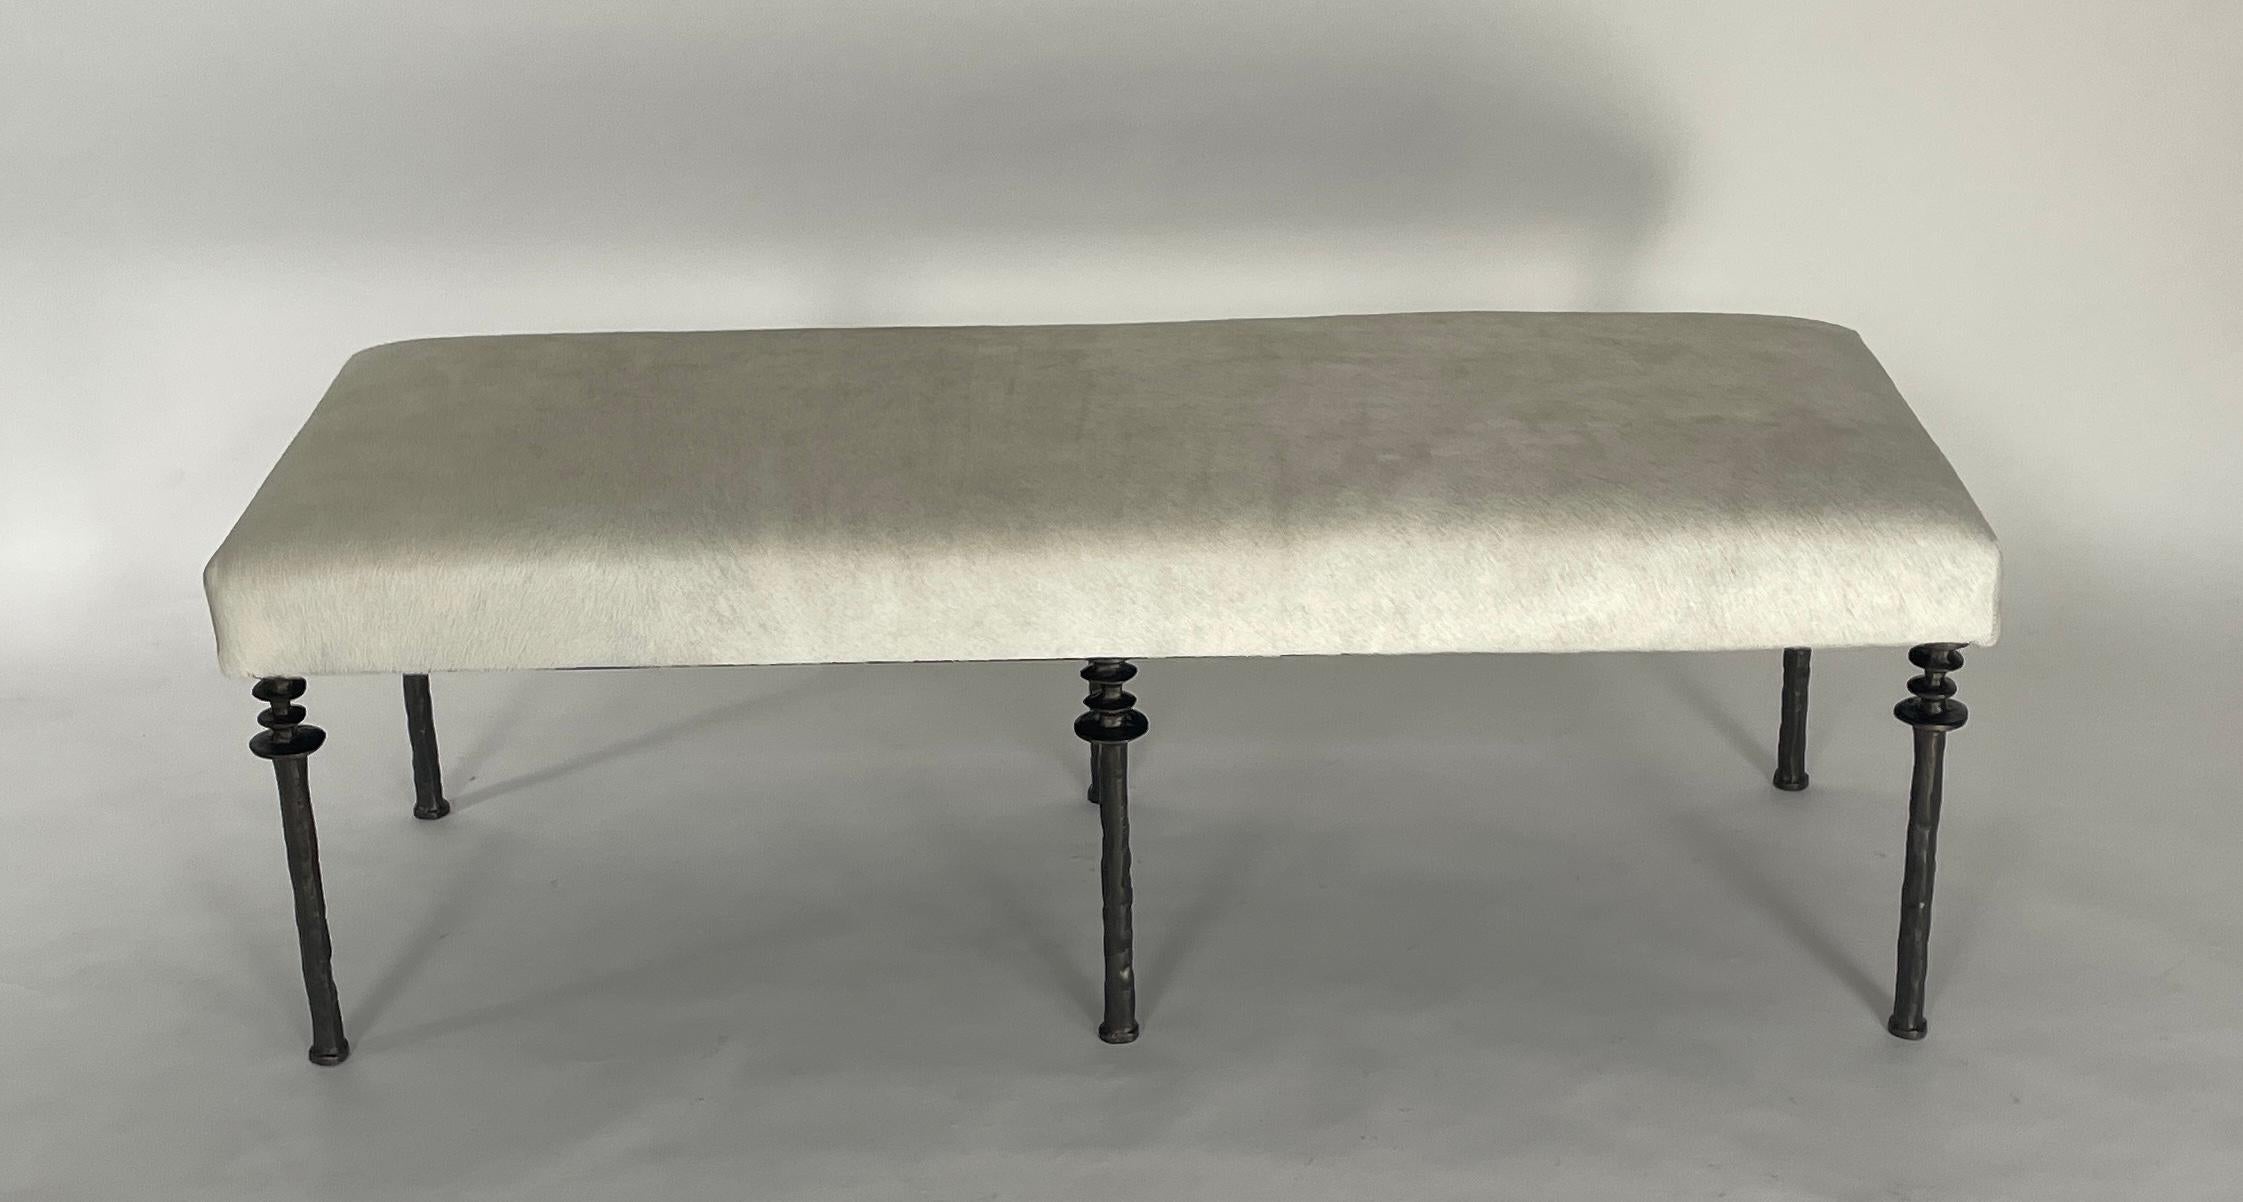 Diese von Diego Giacometti inspirierte Bank ist ideal für alle, die auf der Suche nach einer einzigartigen Sitzgelegenheit sind. Die aus Bronze gegossenen Beine verleihen ihm einen wahrhaft organischen Touch. Das Kissen ist mit einem cremeweißen